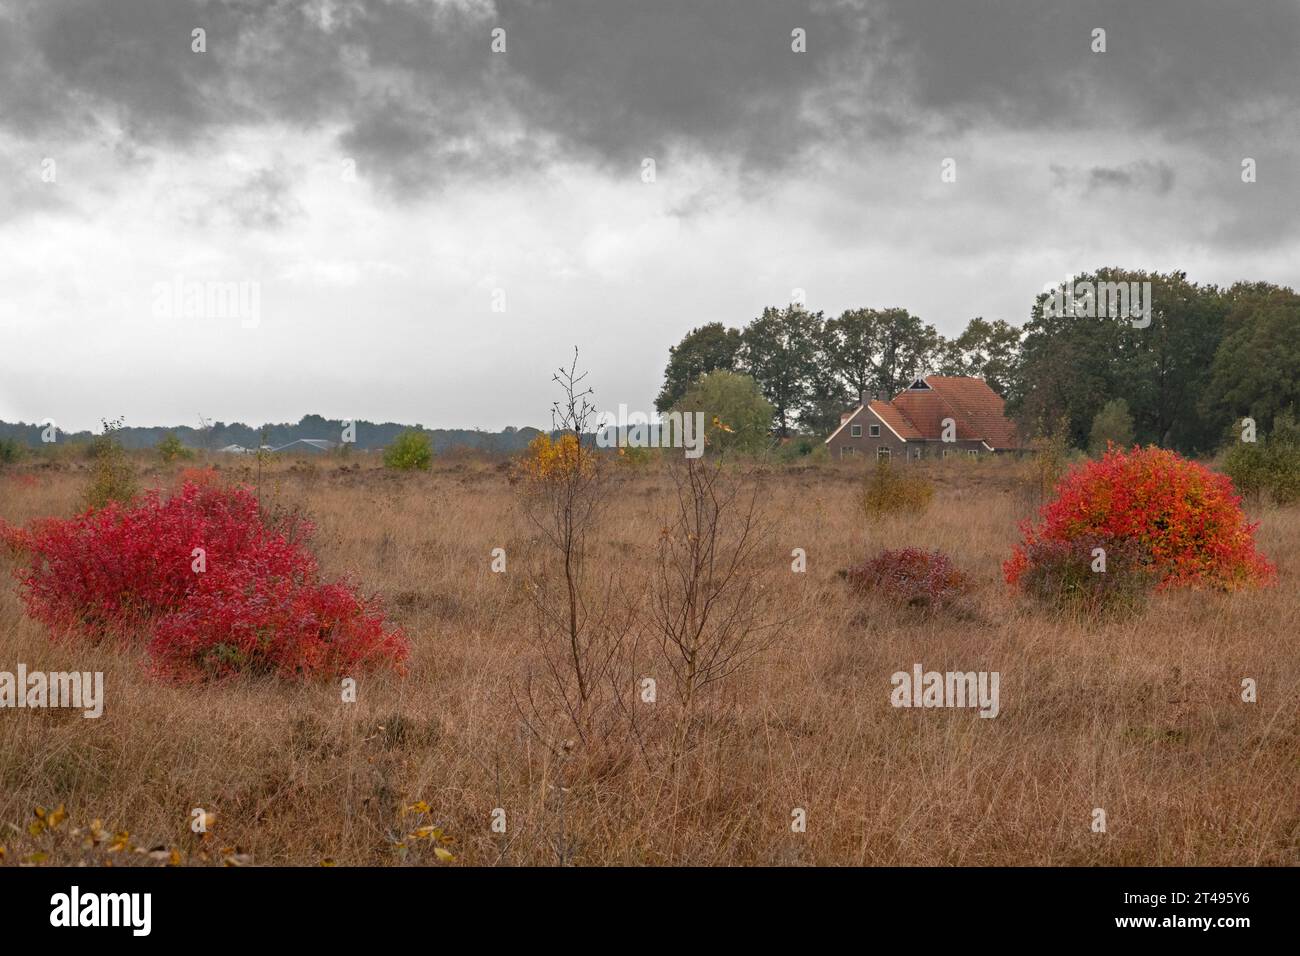 Buissons de myrtilles du nord, levains rouge vif en automne, dans des landes gazonnées, en arrière-plan une ferme avec des tuiles rouges Banque D'Images